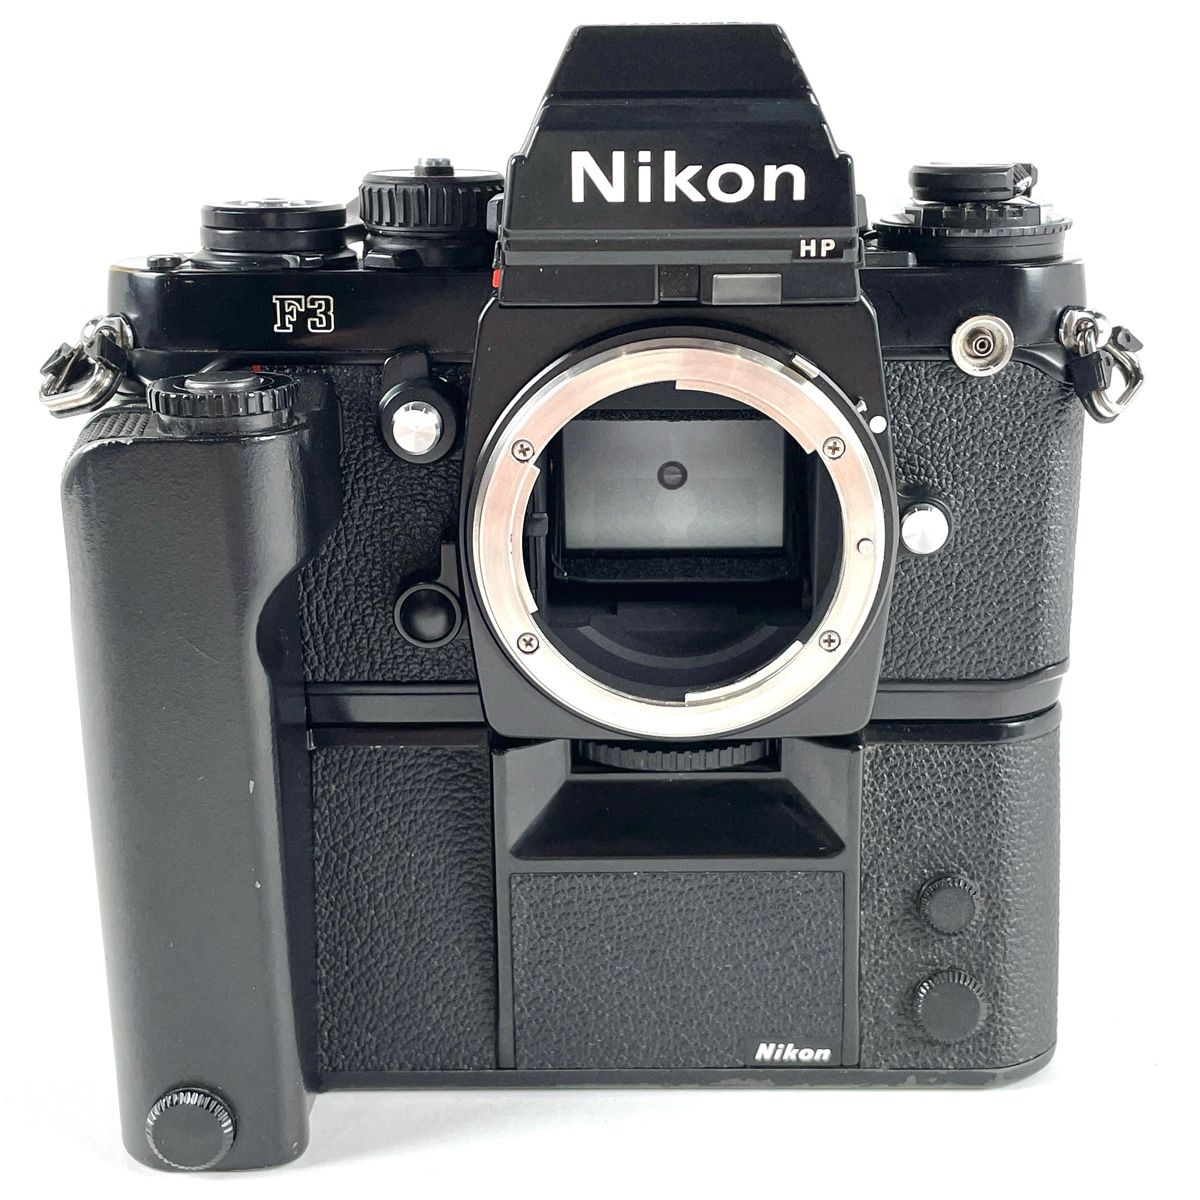 ニコン Nikon F3 HP + MD-4 モータードライブ フィルム マニュアルフォーカス 一眼レフカメラ 【中古】